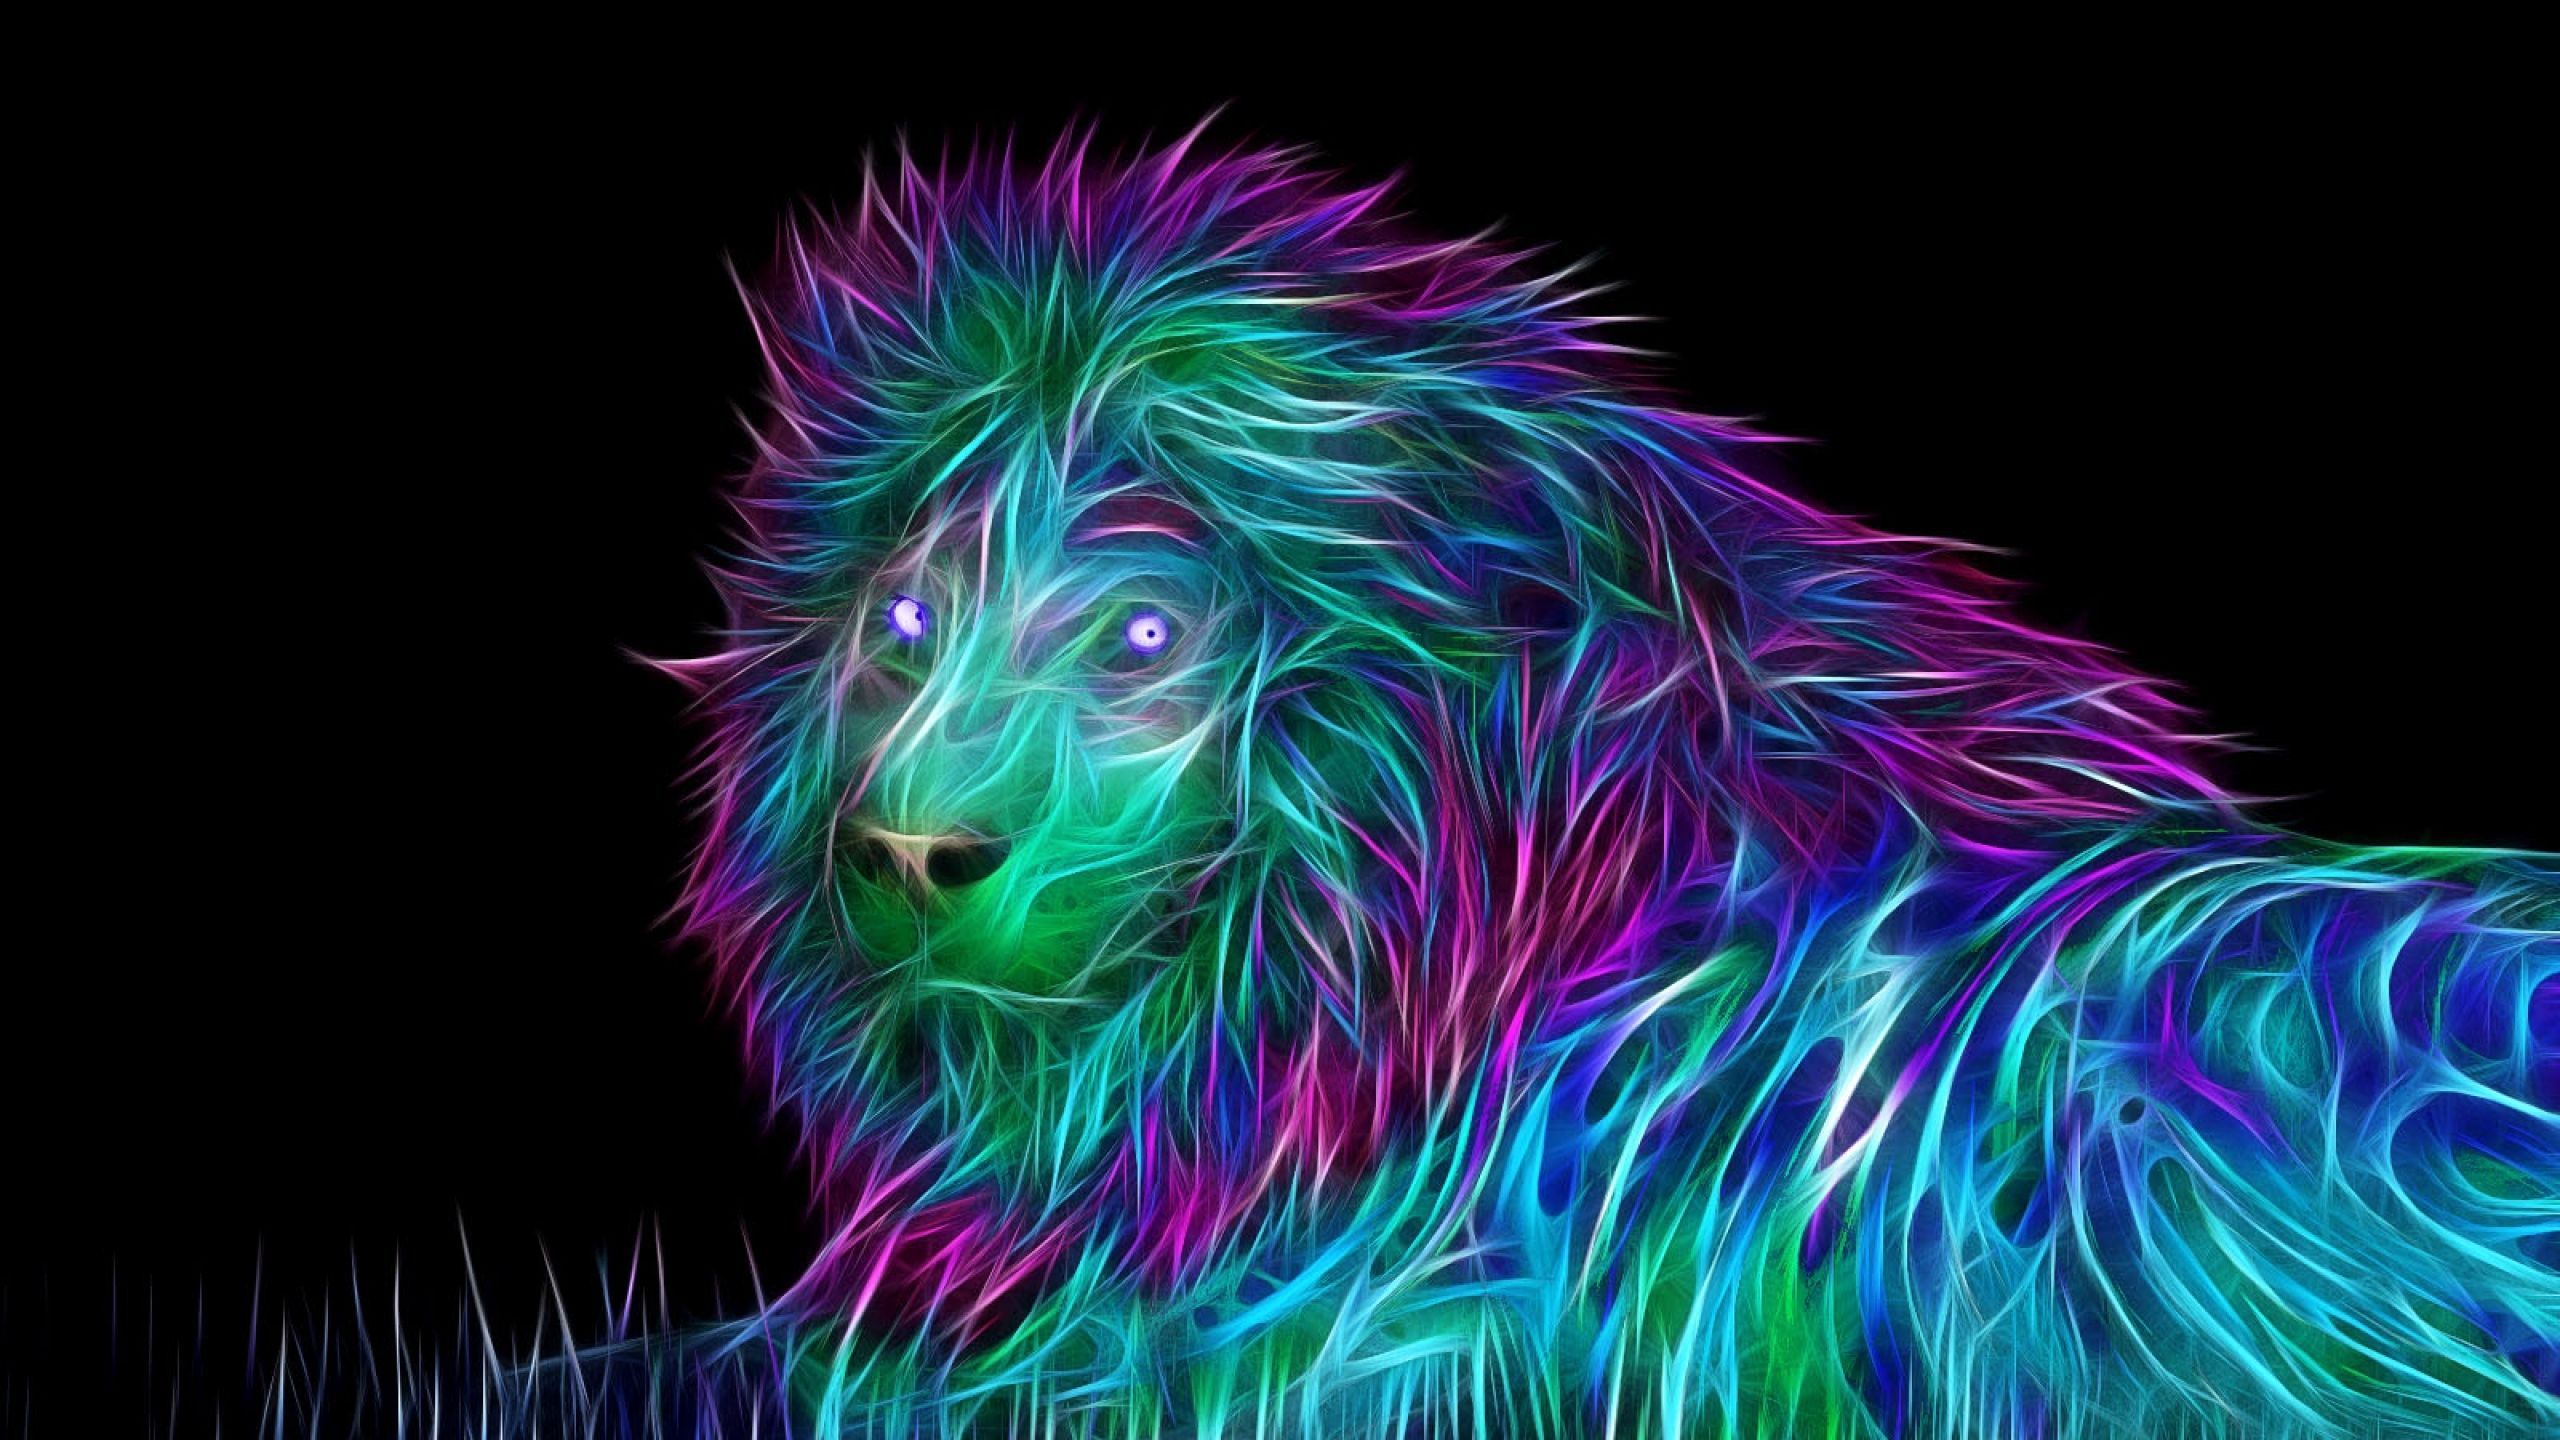 Neon lion wallpaper. Abstract art wallpaper, Abstract lion, Abstract lion art